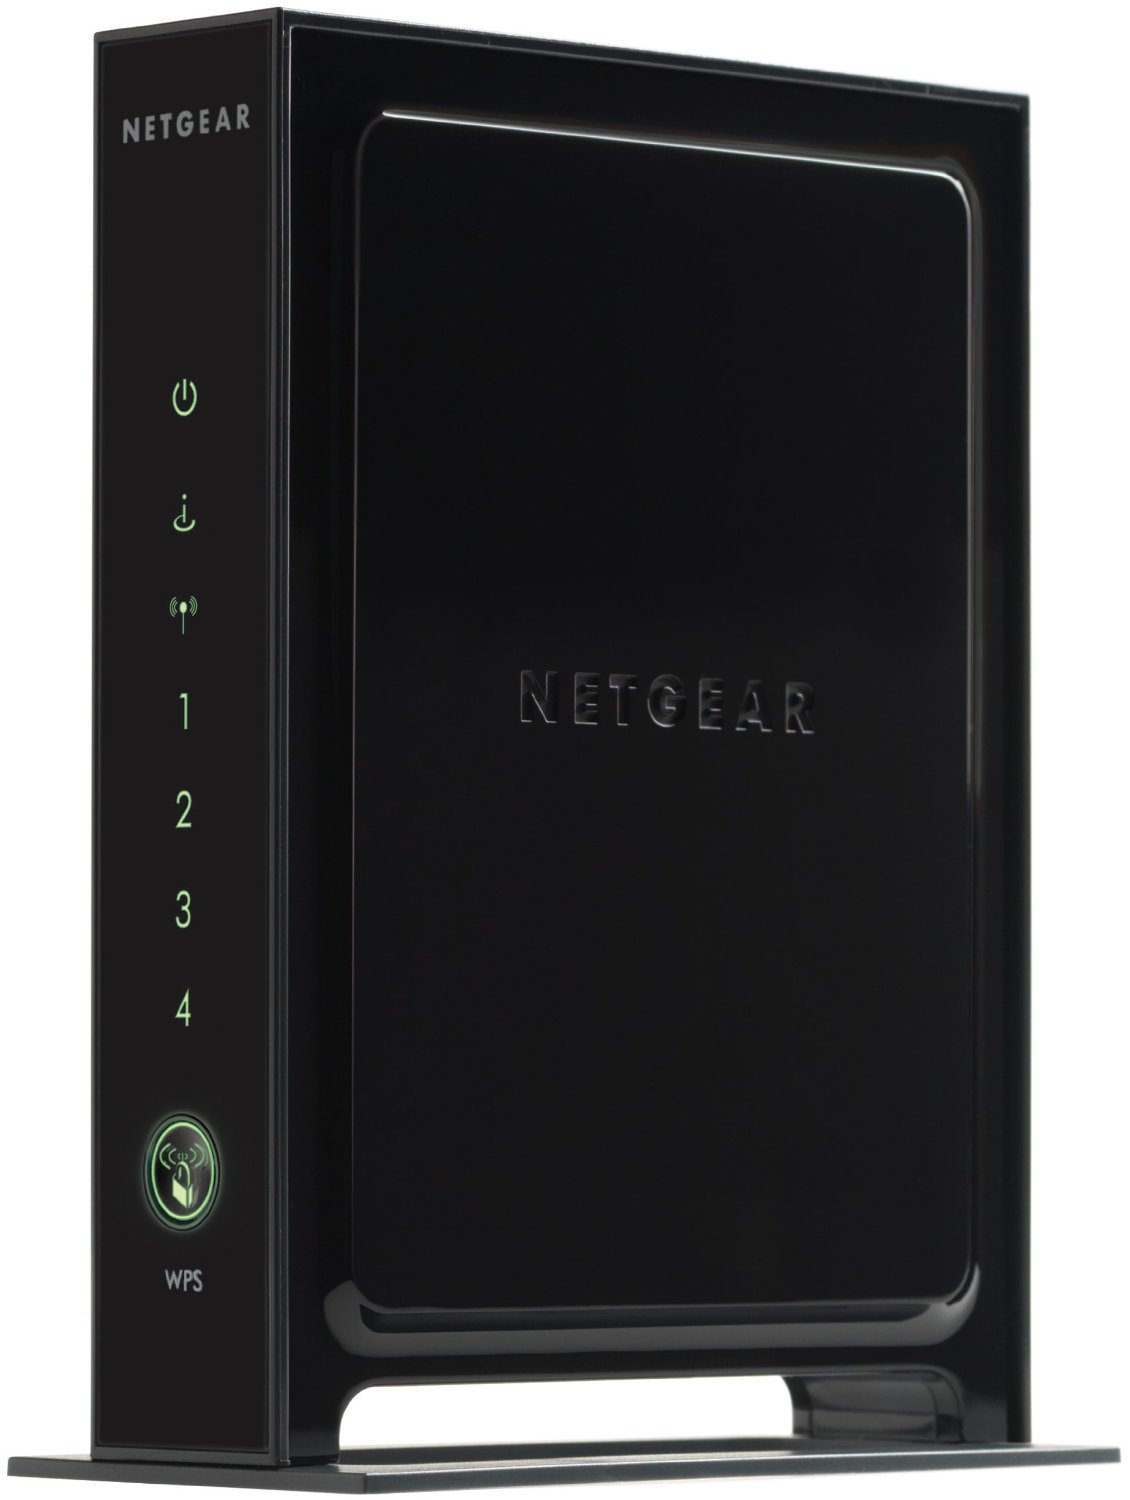 netgear-n300-router